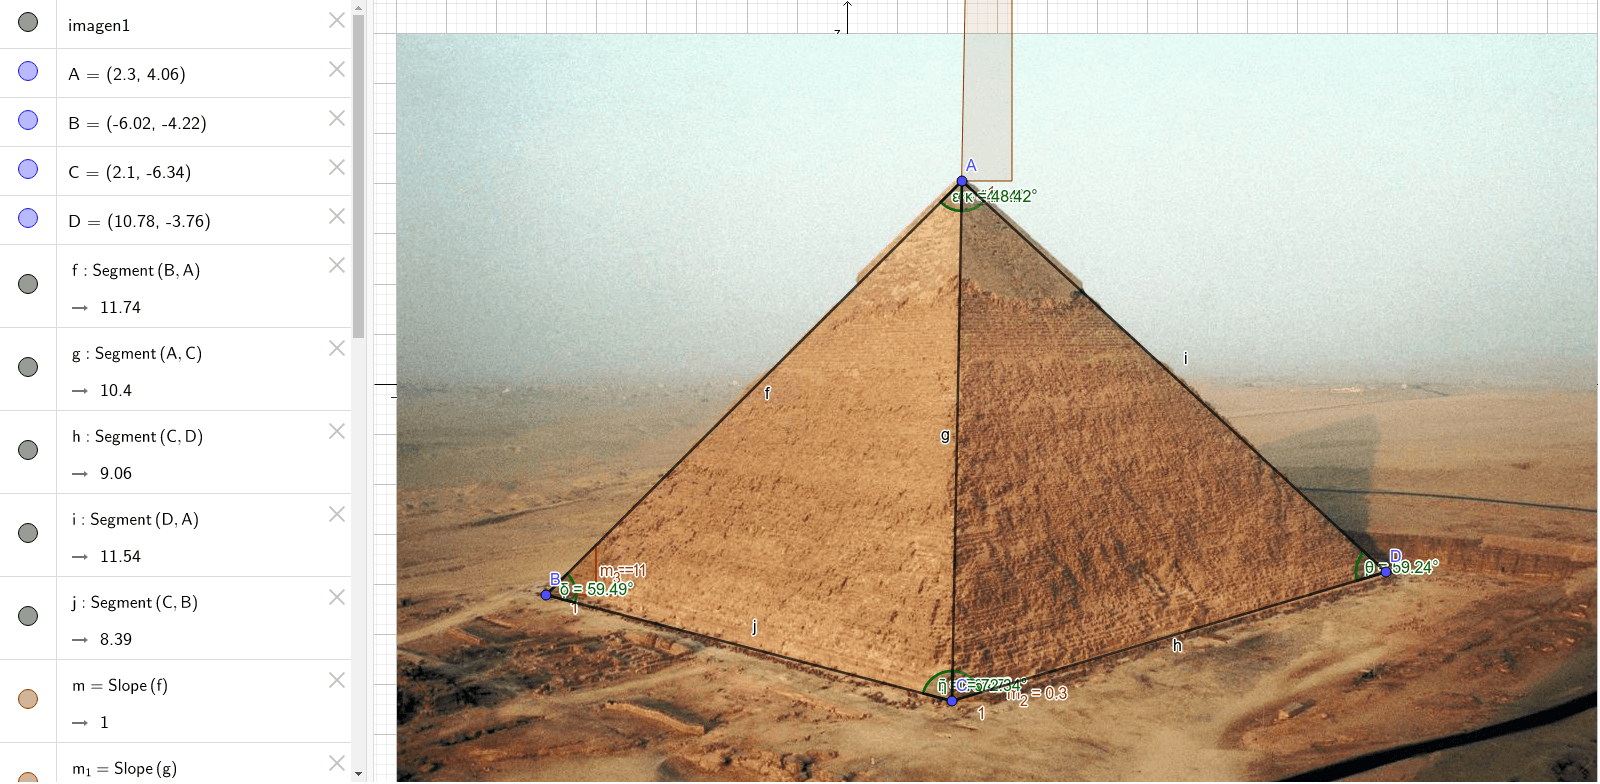 золотое сечение пирамиды